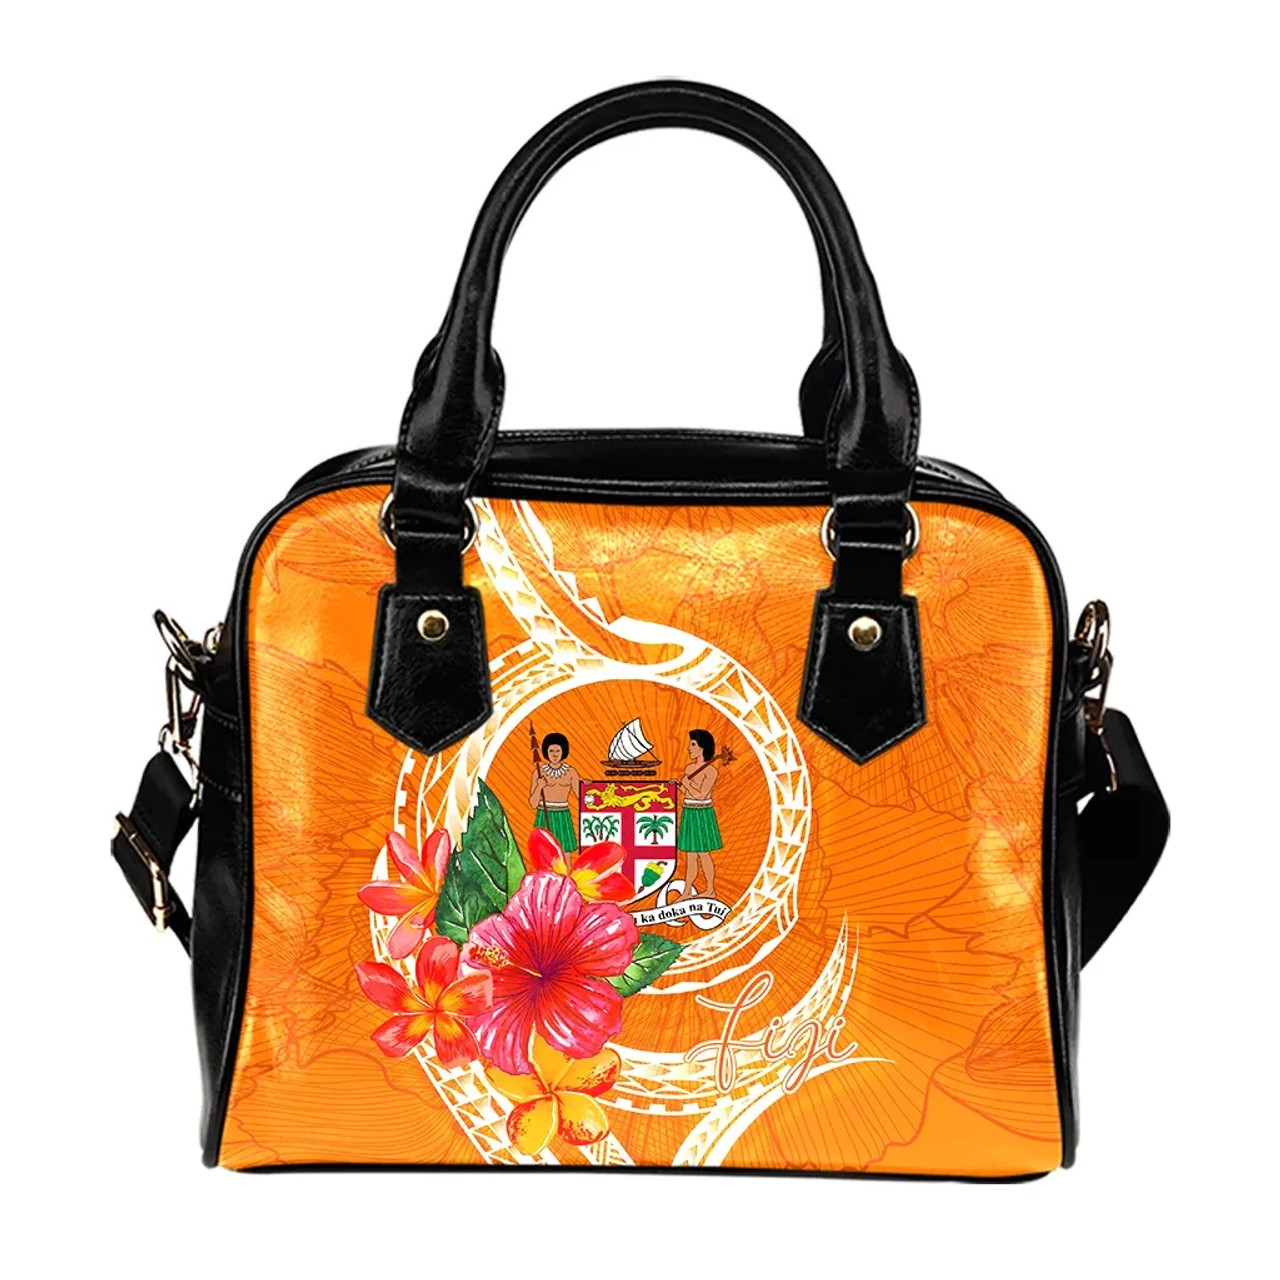 Fiji Polynesian Shoulder Handbag - Orange Floral With Seal 1